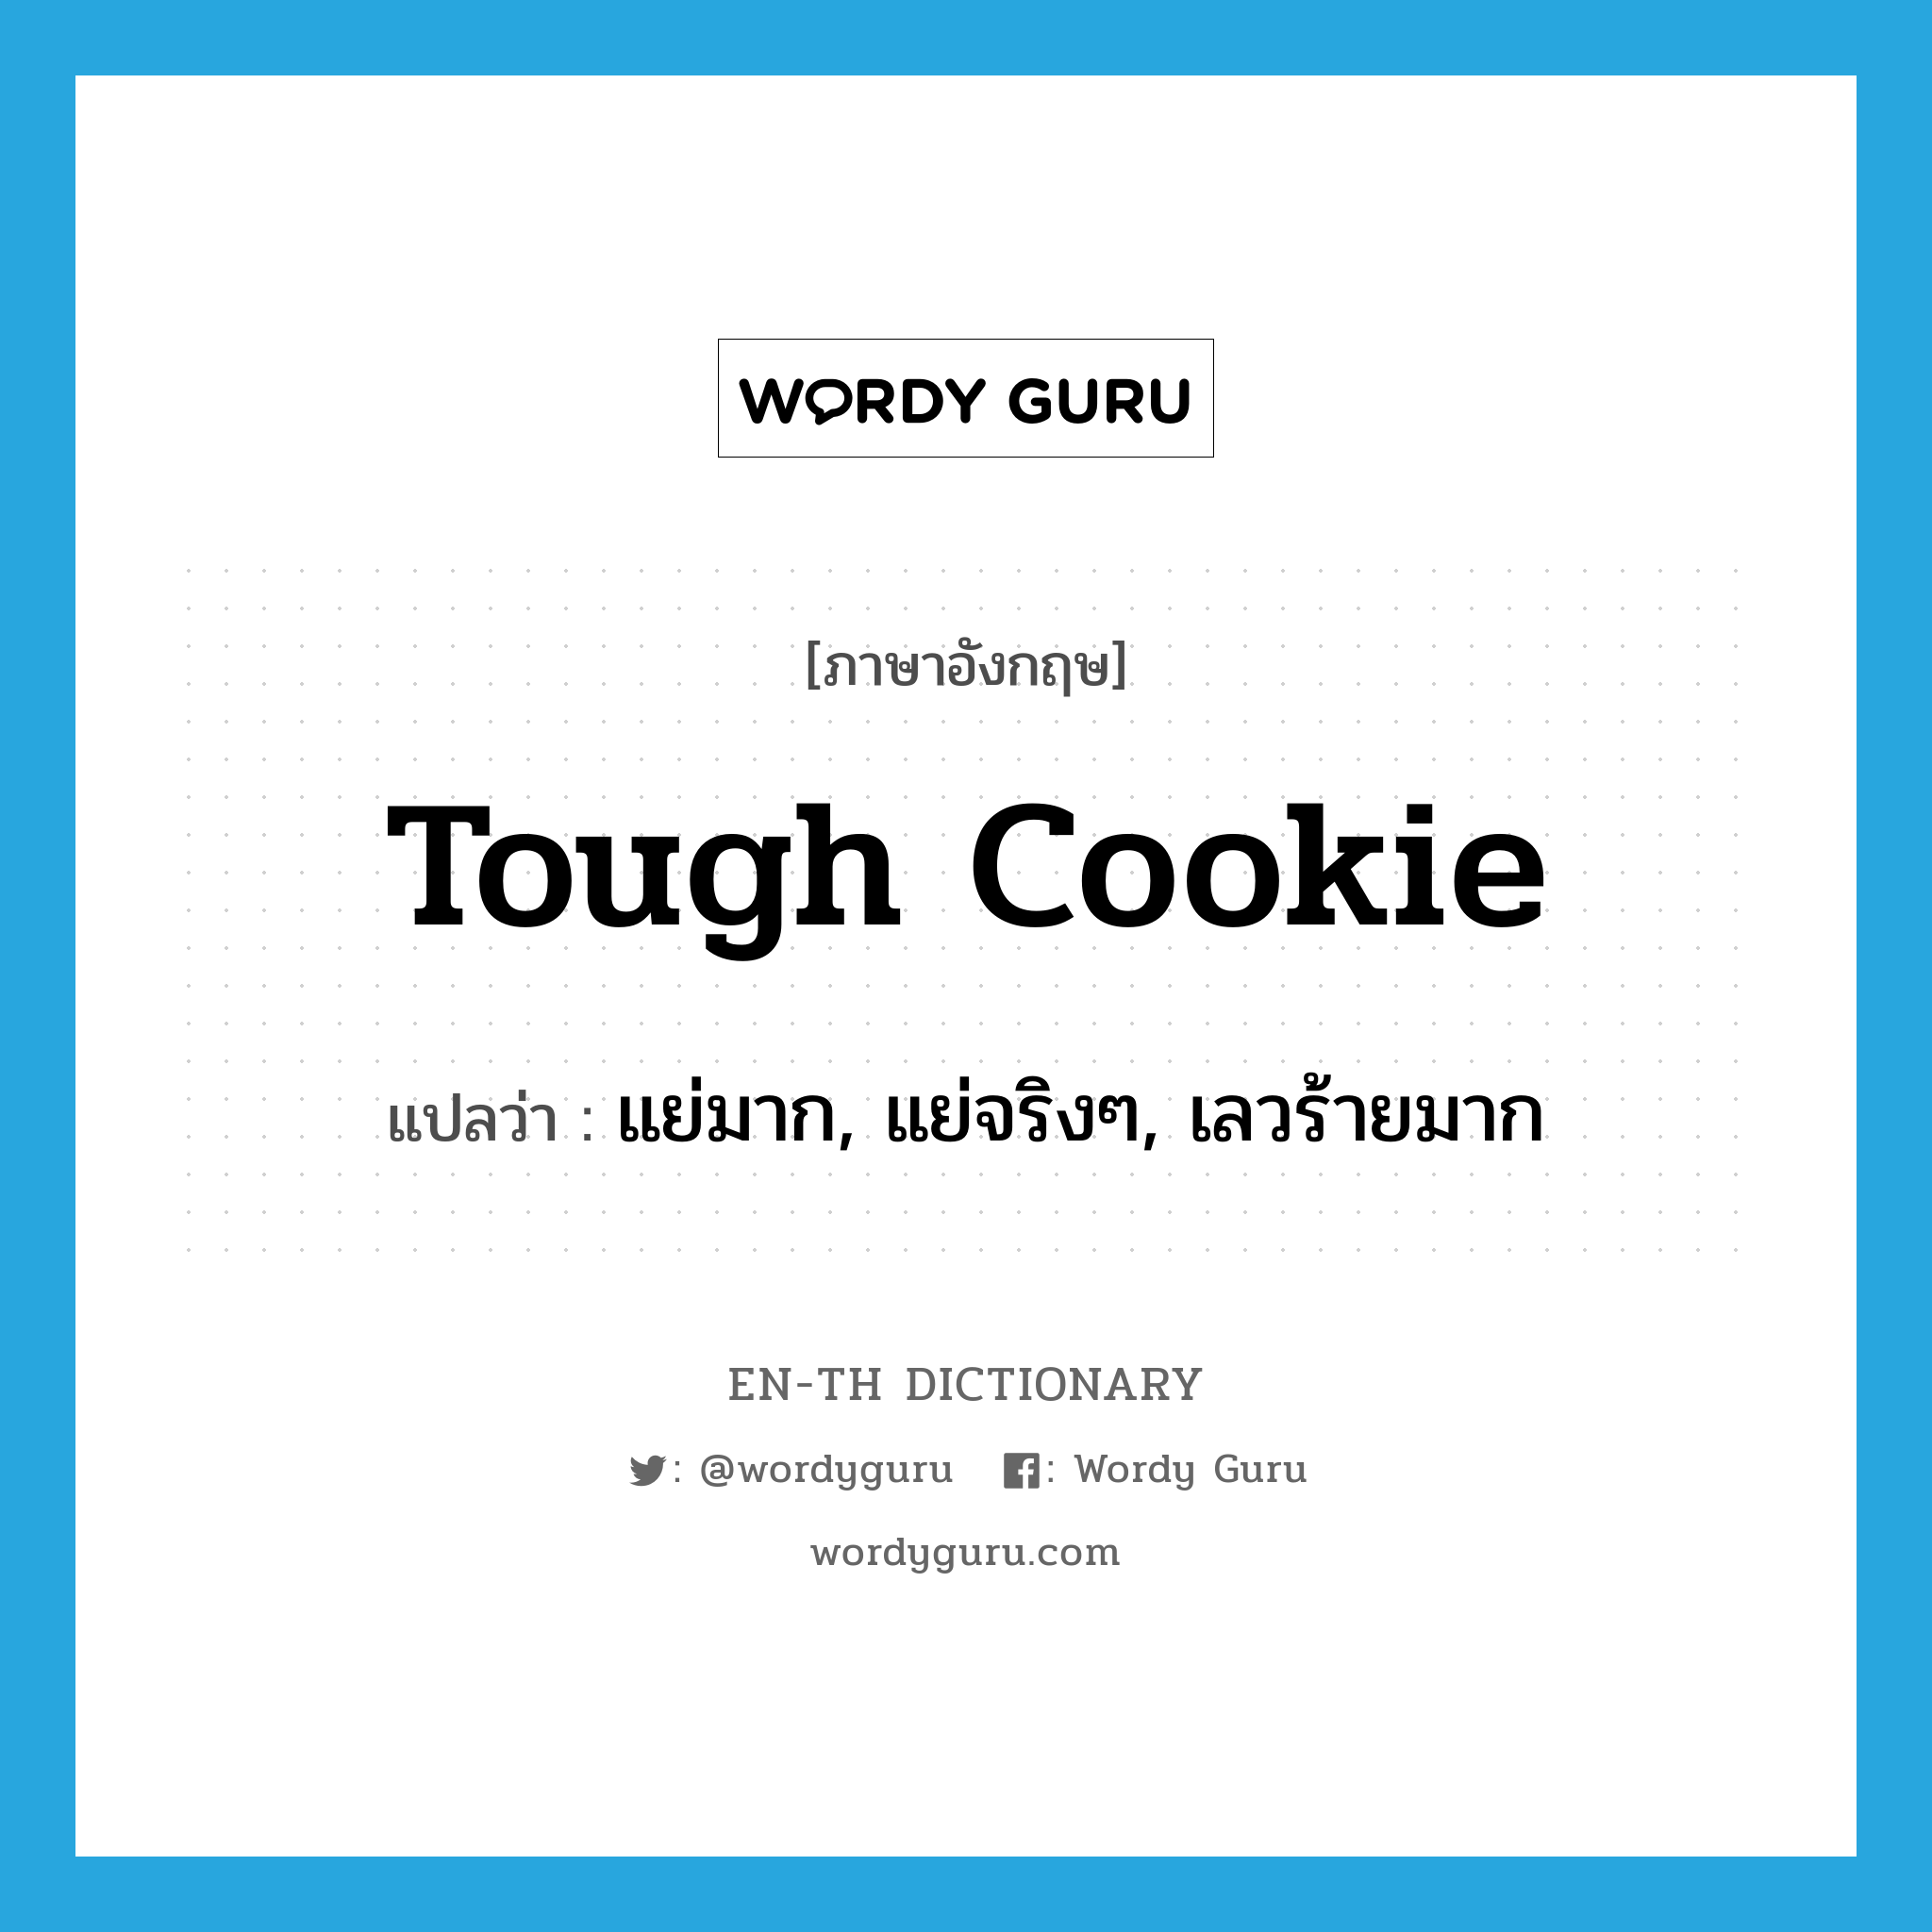 แย่มาก, แย่จริงๆ, เลวร้ายมาก ภาษาอังกฤษ?, คำศัพท์ภาษาอังกฤษ แย่มาก, แย่จริงๆ, เลวร้ายมาก แปลว่า tough cookie ประเภท SL หมวด SL